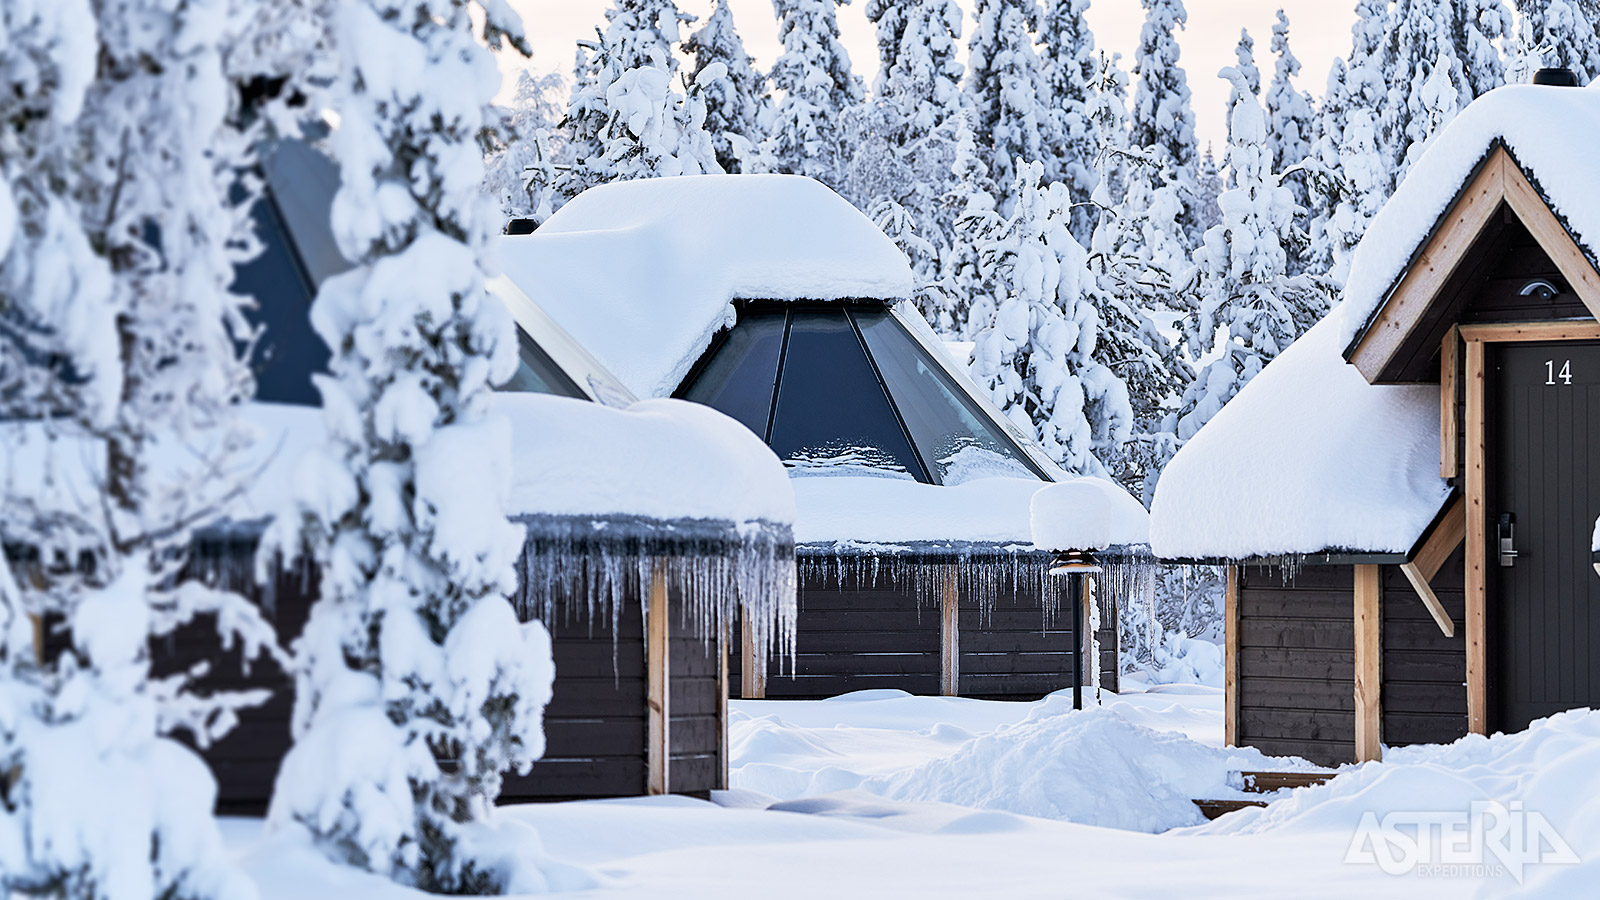 Ontdek de betoverende schoonheid van Lapland tijdens een verblijf in één van de Aurora Cabins van het Northern Lights Village Levi